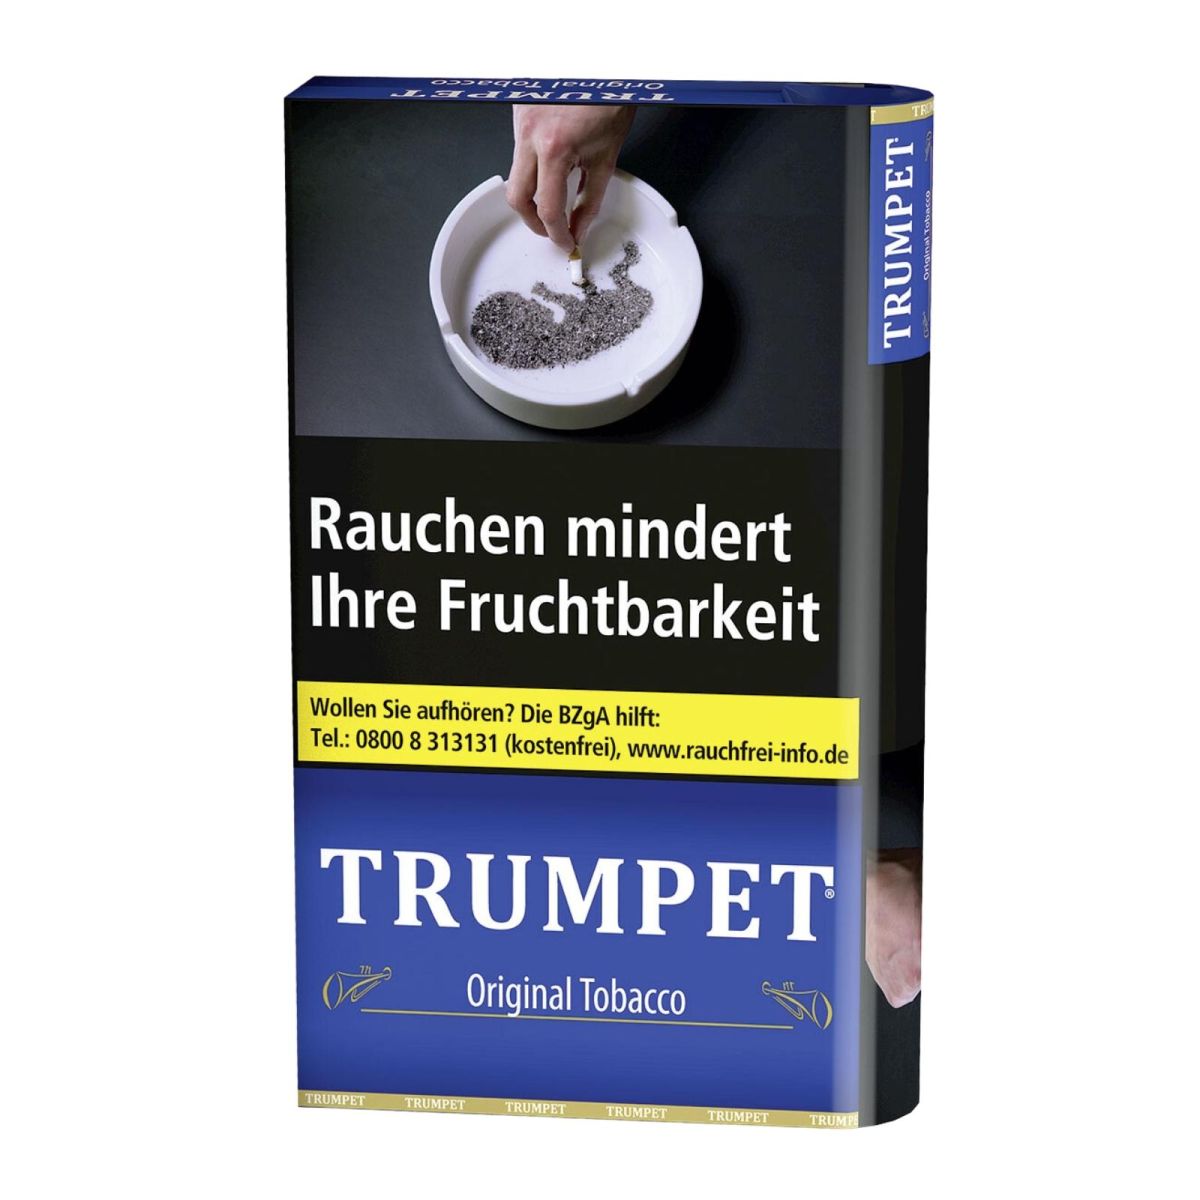 Trumpet Trumpet Original Tobacco bei www.Tabakring.de kaufen